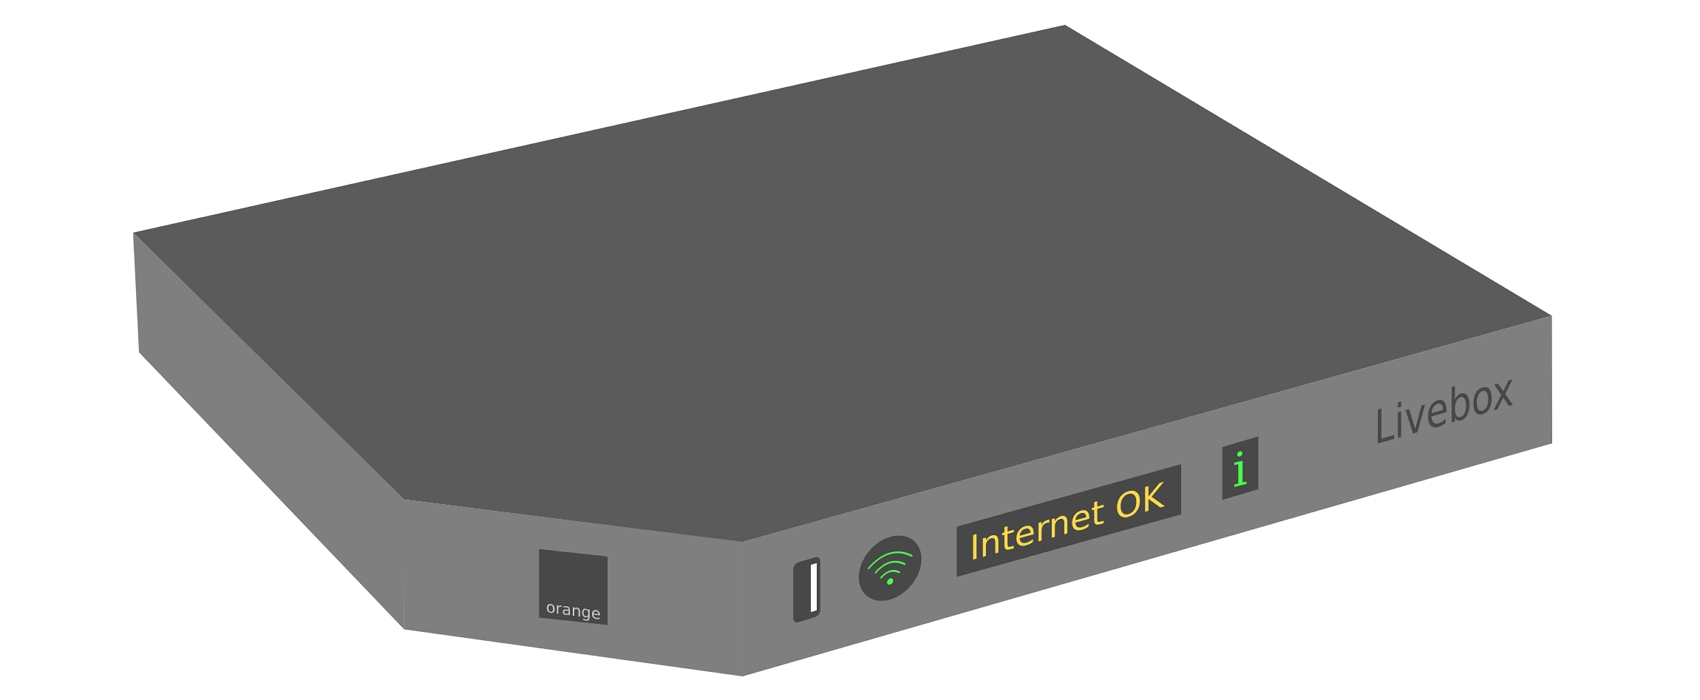 Une Box Internet est le terme utilisé pour désigner les boîtiers de connexion mis à votre disposition par votre Fournisseur d'Accès à Internet afin de bénéficier d'une connexion Internet chez vous. © Clic2Load